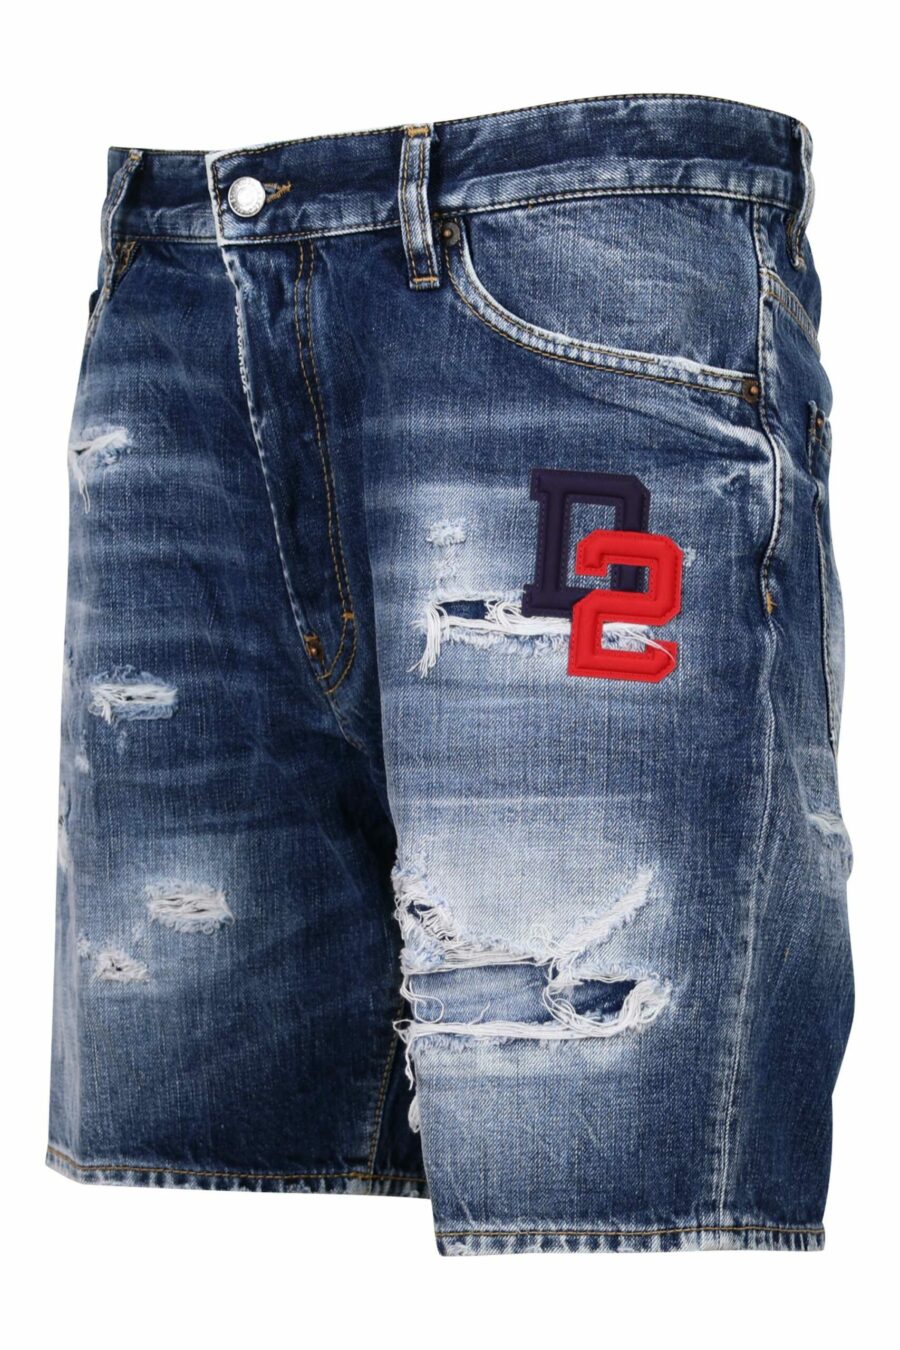 Blue denim shorts "marine short" with red logo - 8054148339920 1 scaled